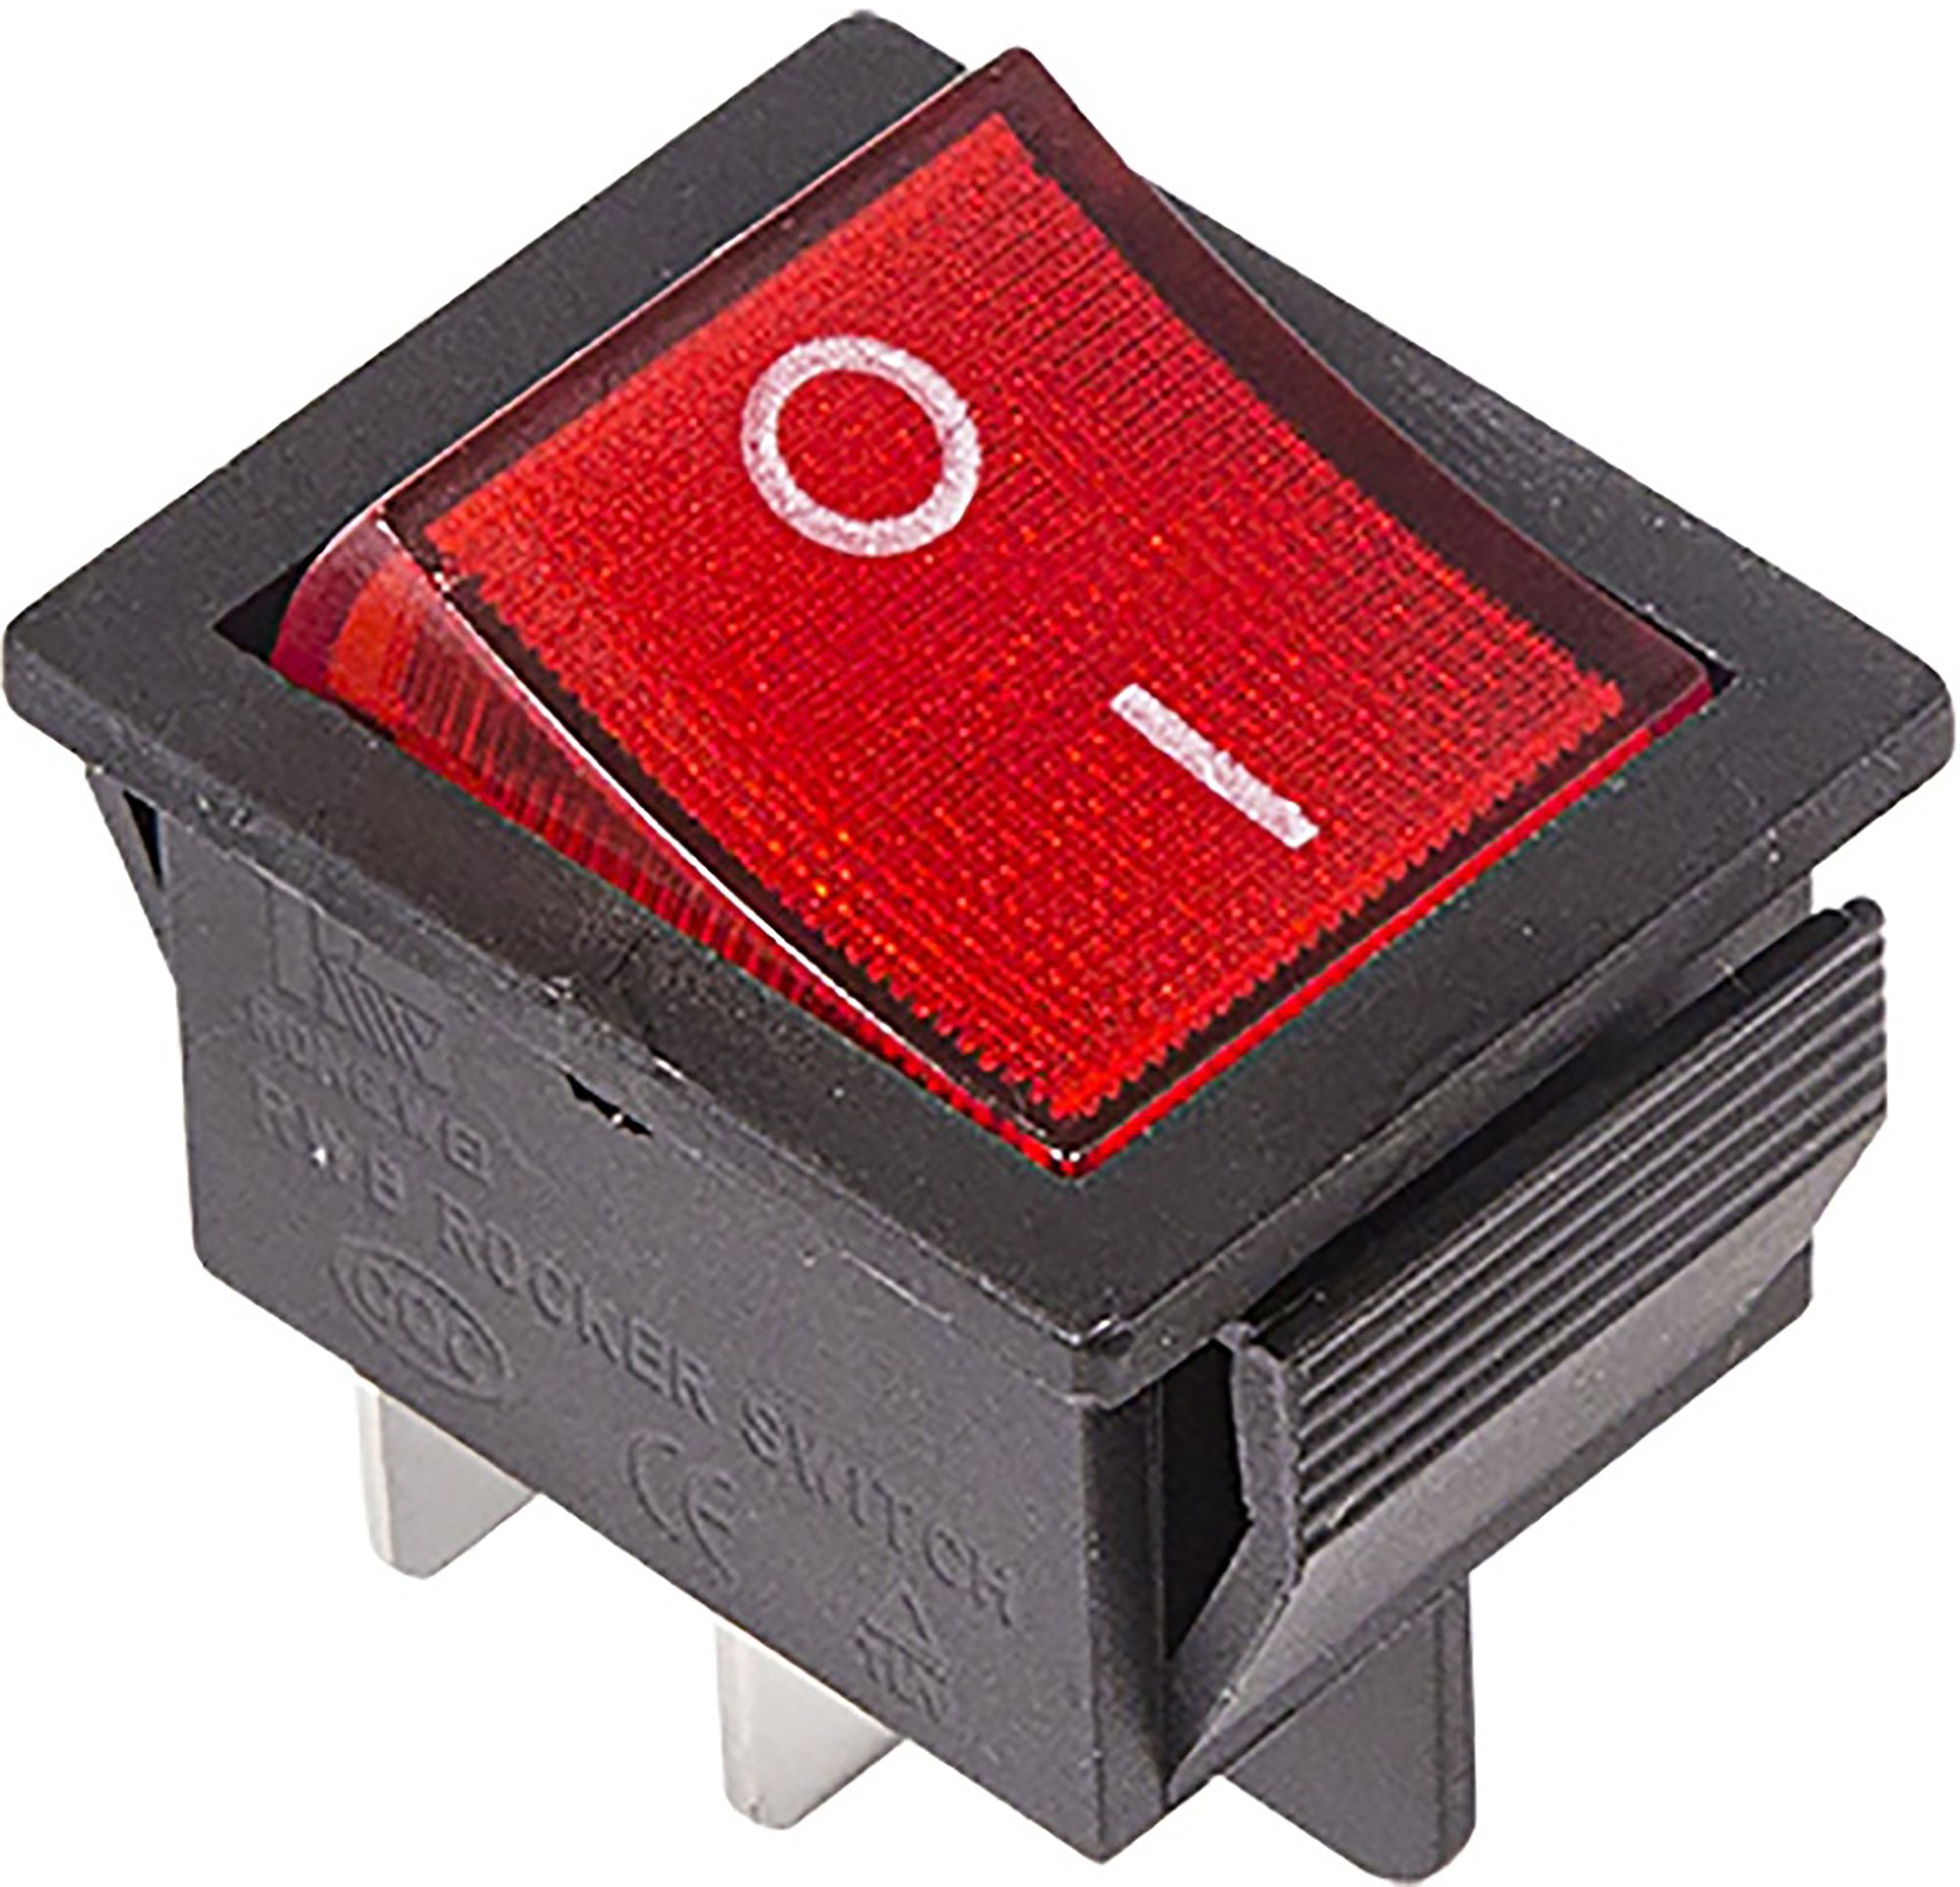 Подсветка кнопки выключателя. Выключатель клавишный 250v 16а 4с on-off красный с подсветкой Rexant. Выключатель клавишный 250v 15а (4с) (on)-off черный б/фикс Rexant. 36-2330, Выключатель клавишный 250v 16а (4с) on-off красный с подсветкой. Выключатель клавишный 250v 15а (6с) on-off-on черный с нейтралью.